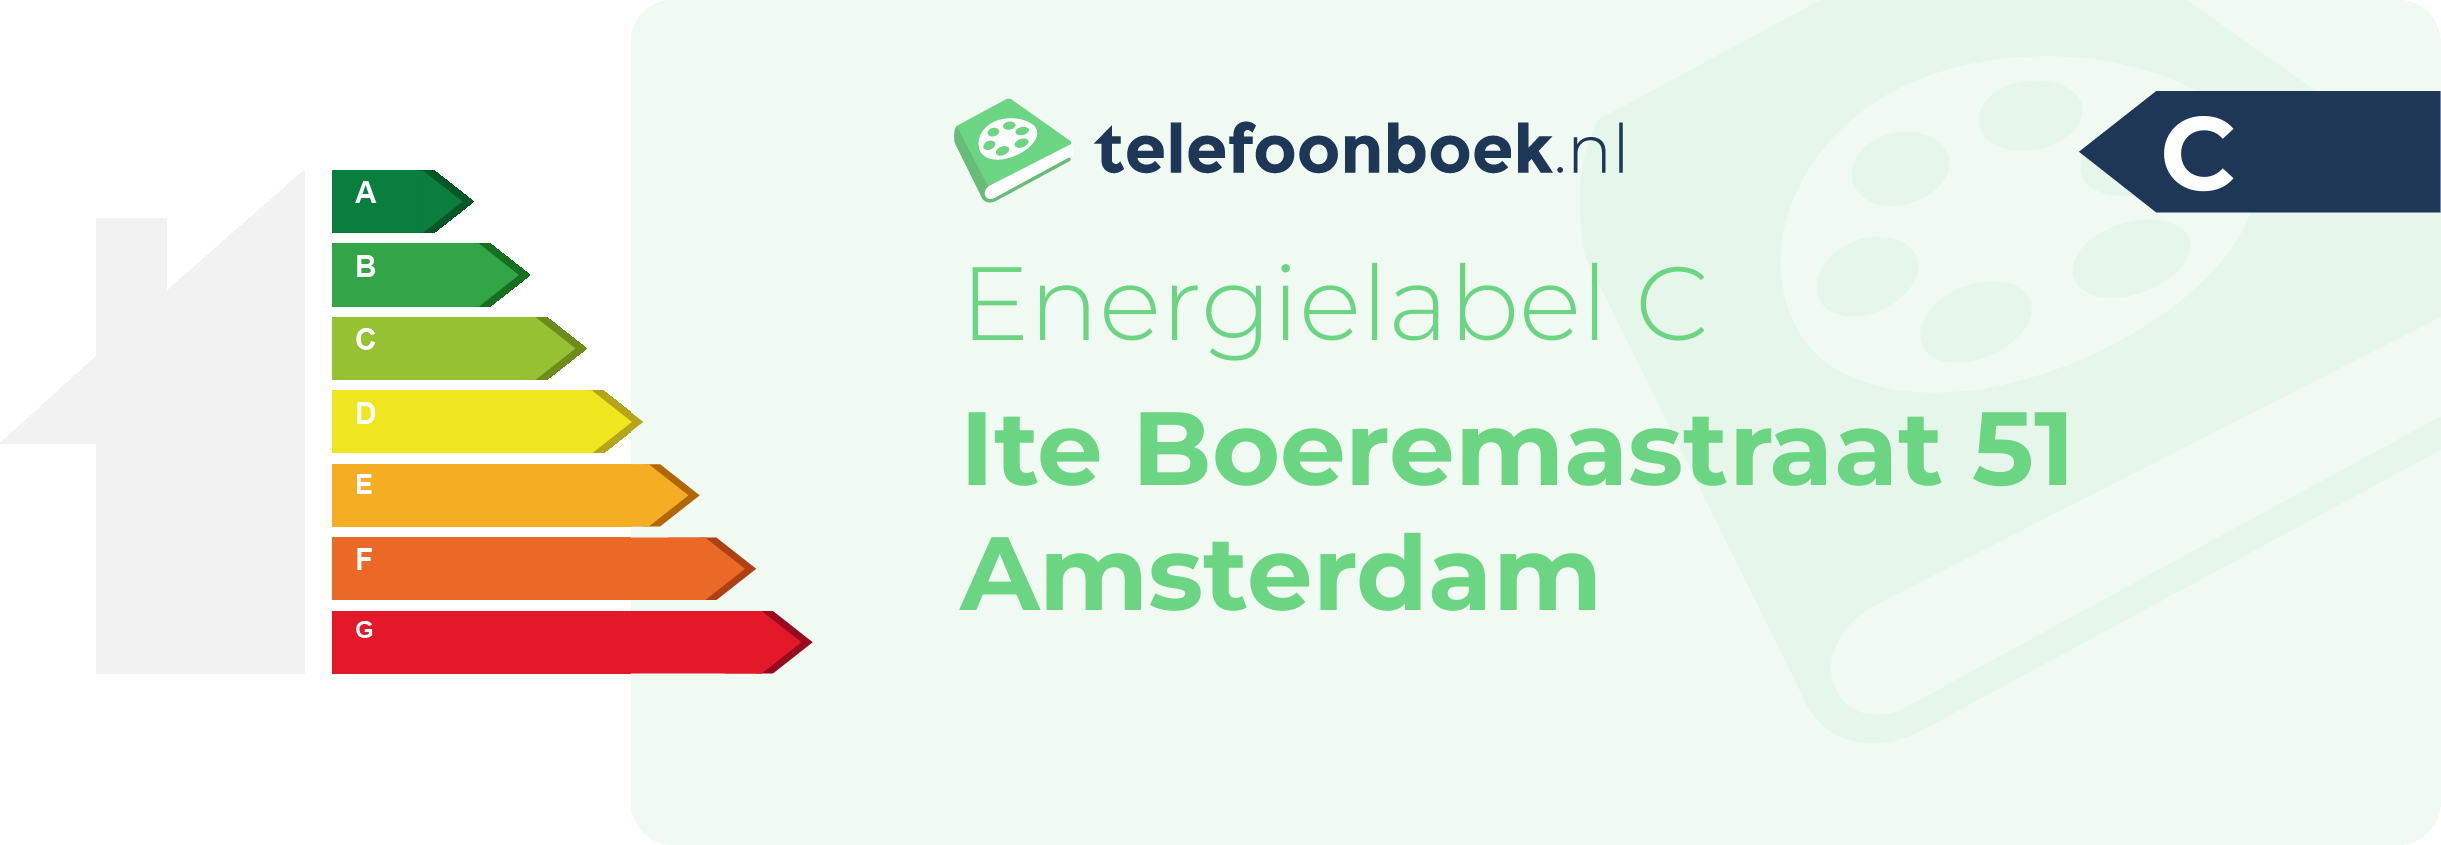 Energielabel Ite Boeremastraat 51 Amsterdam